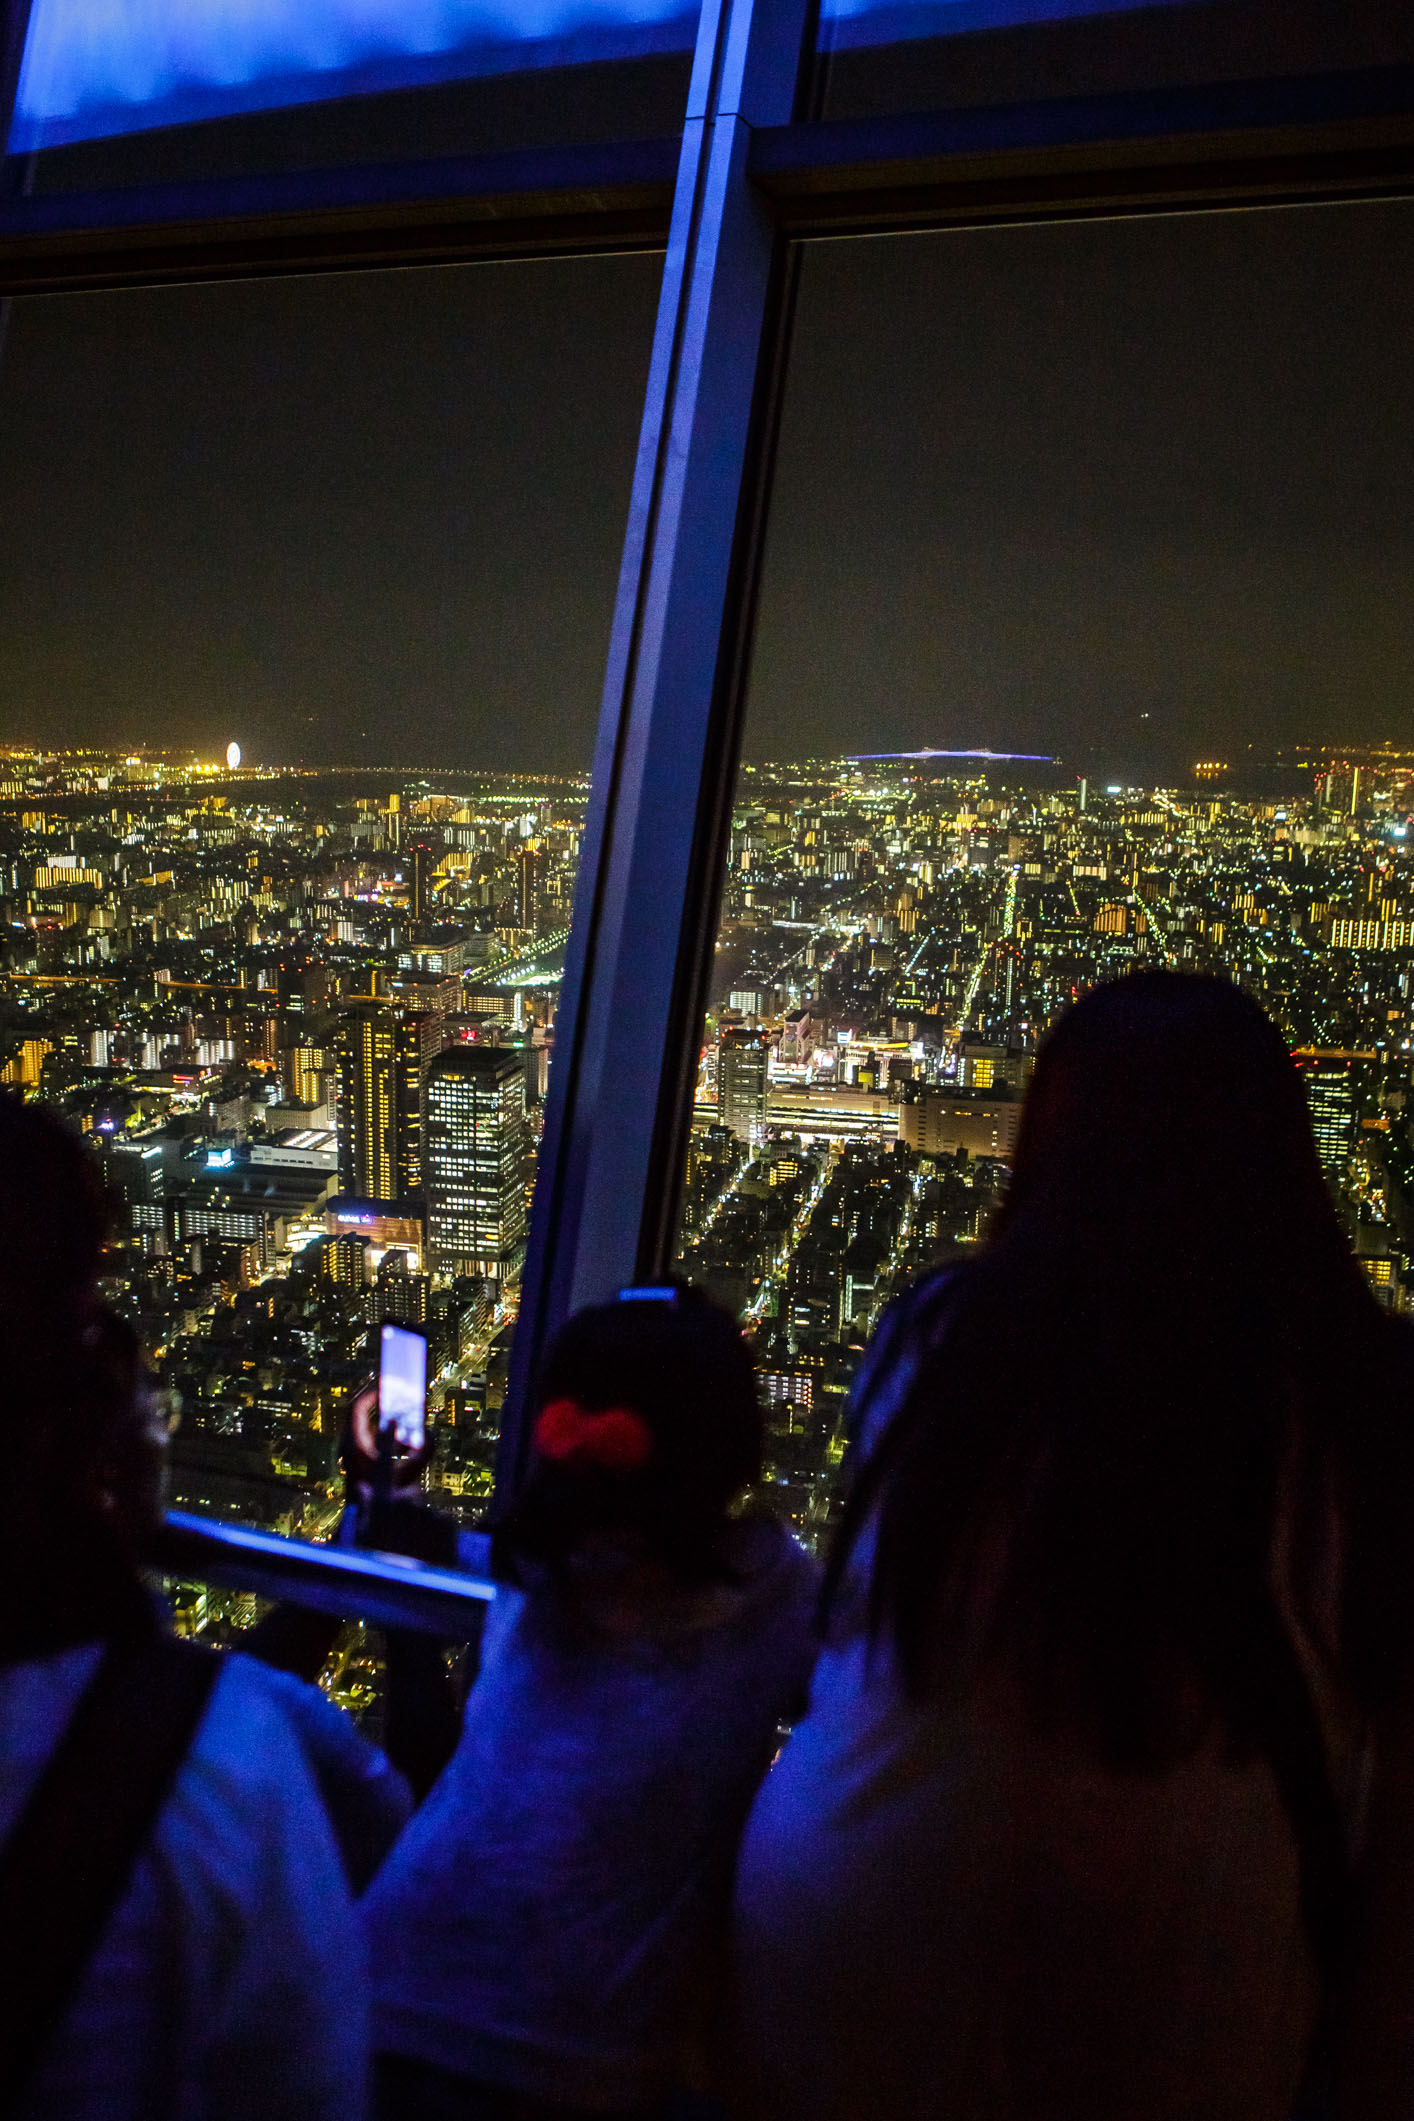 /Guewen/galeries/public/Voyages/Japon/Tokyo/Skytree-Tower/350/Skytree_20.jpg